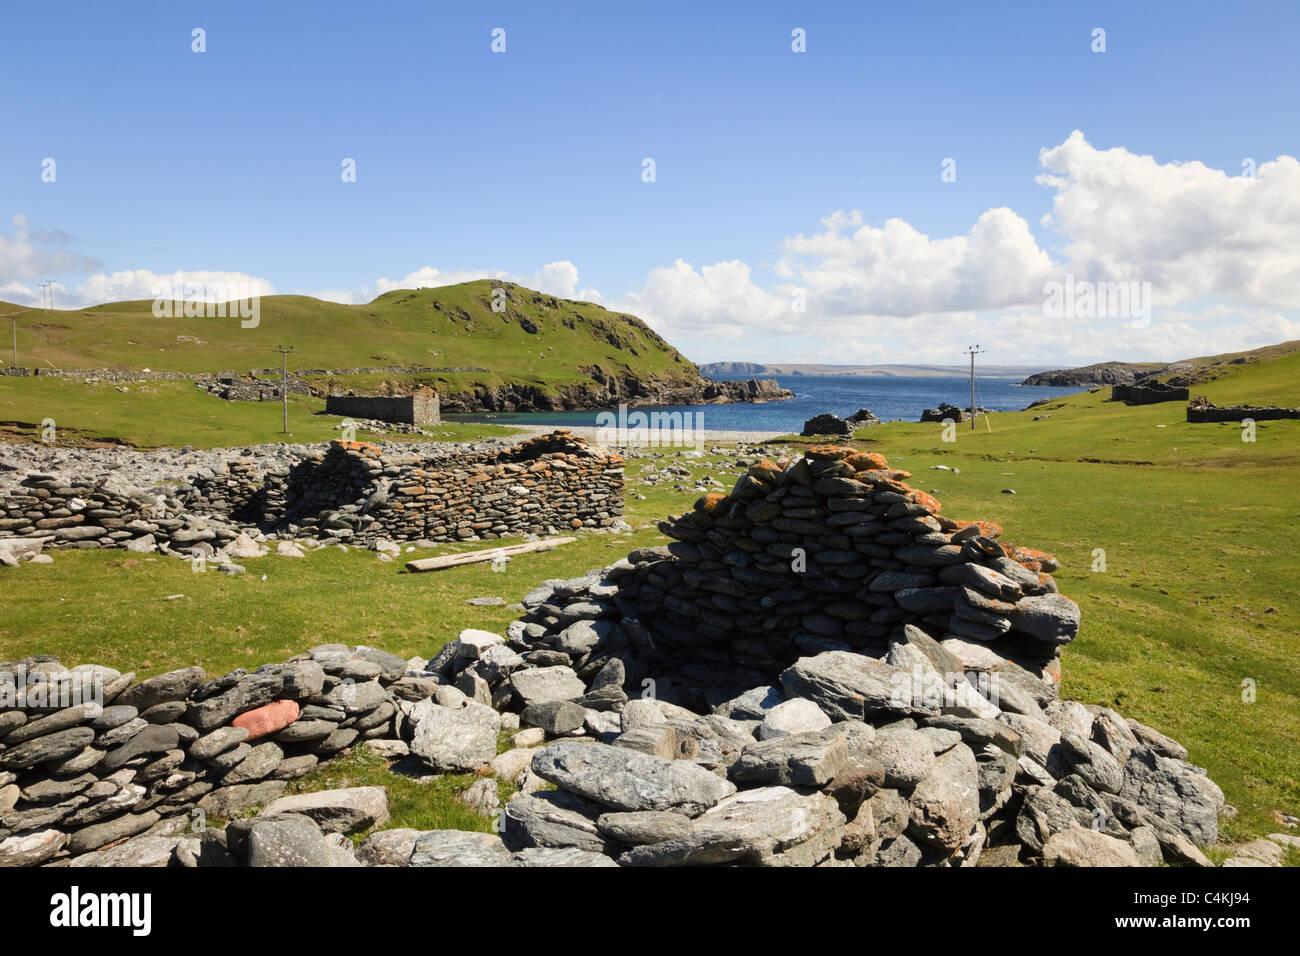 Derelitti casoni da pesca alla vecchia stazione Haaf patrimonio dell'umanità. Fethaland, Northmavine, isole Shetland, Scotland, Regno Unito Foto Stock